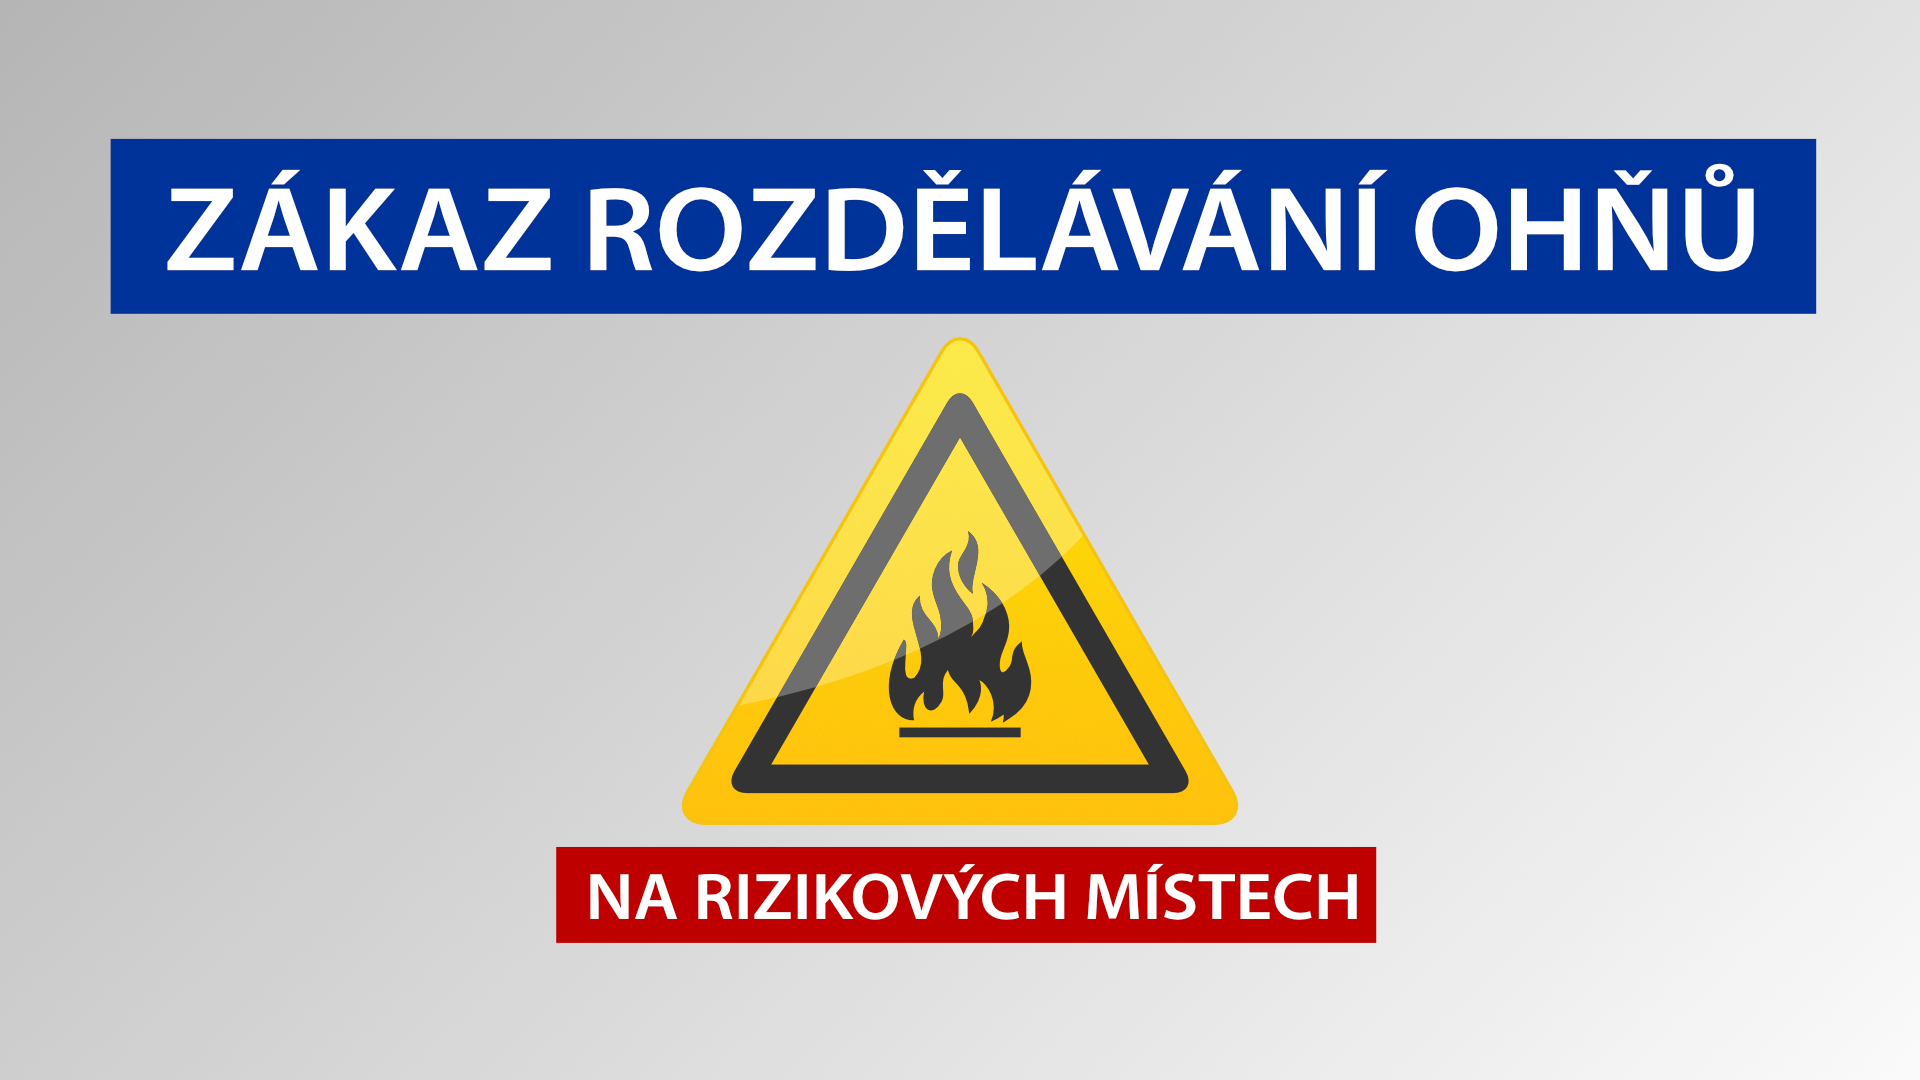 V Praze platí od dnešních 12:00 hodin až do odvolání zákaz rozdělávání ohňů na rizikových místech